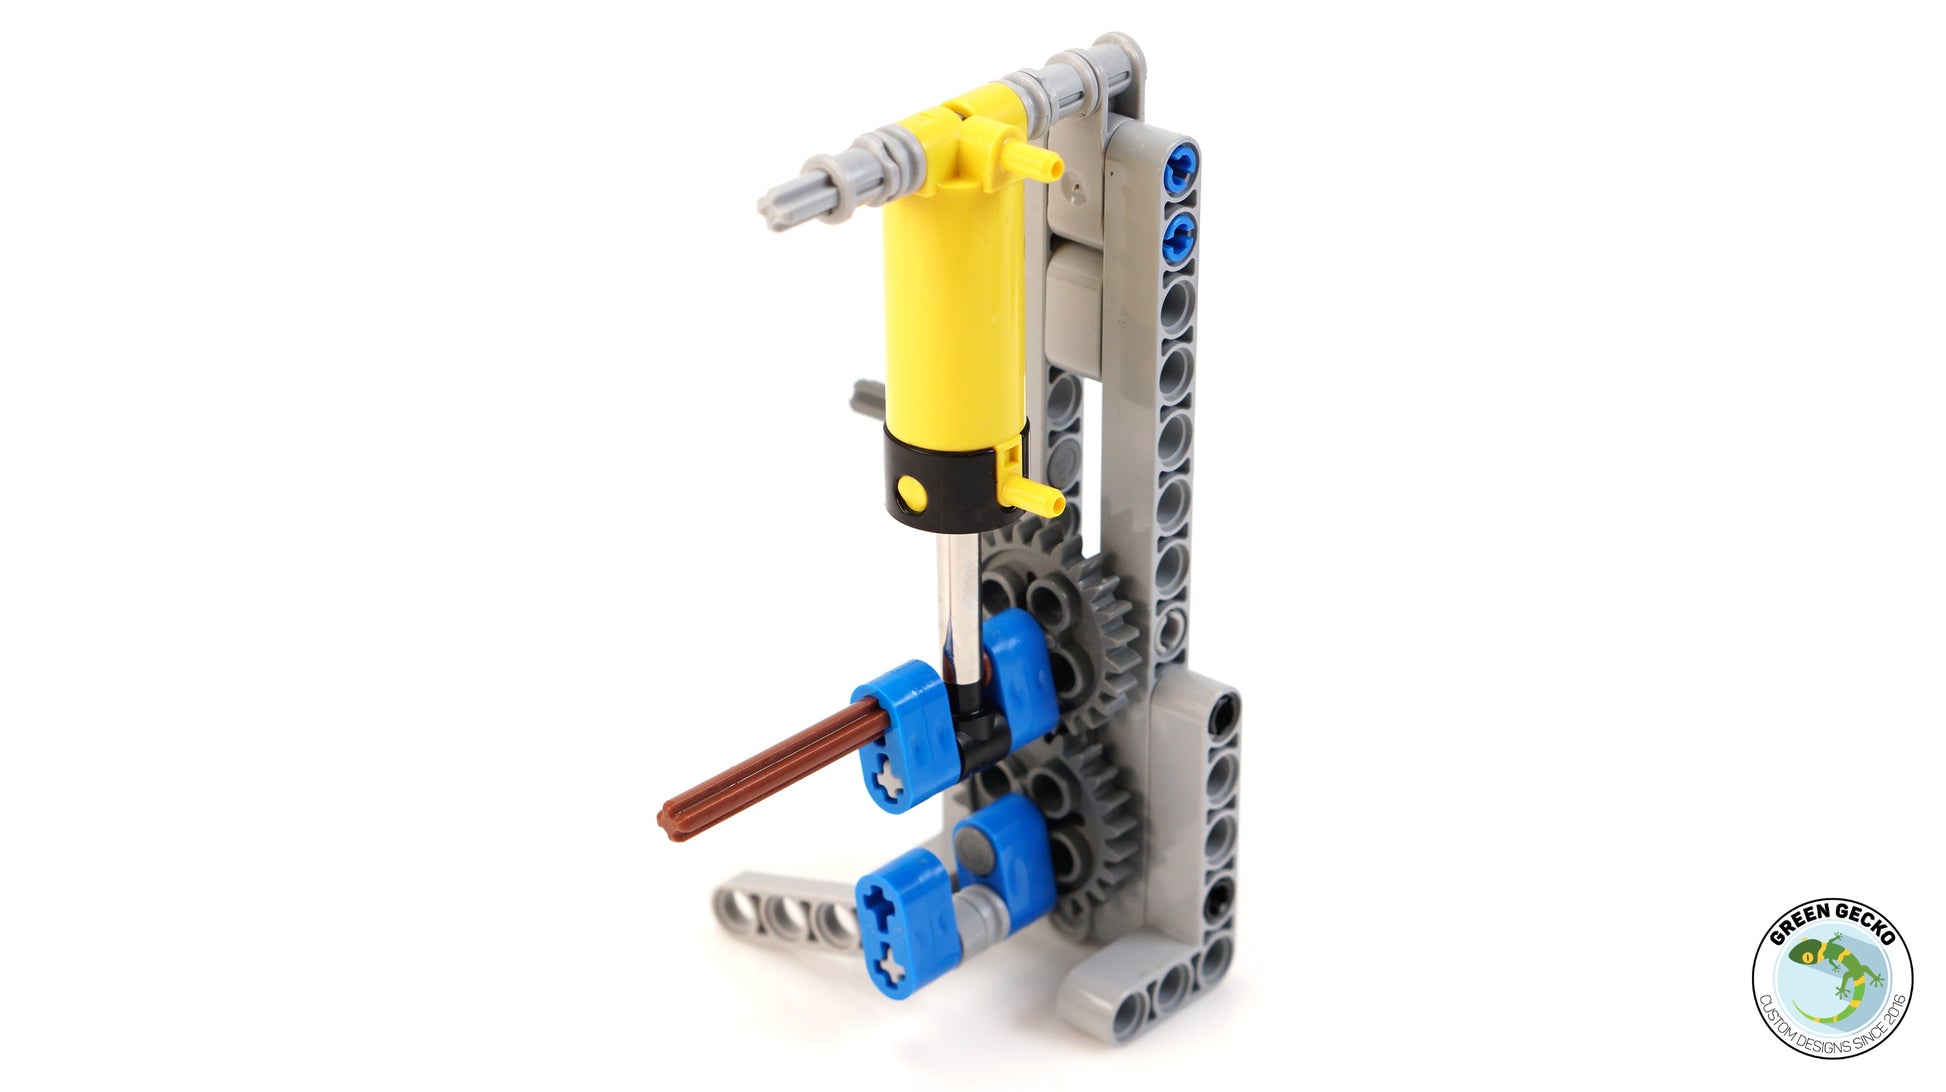 Fremtrædende maske Akademi Pro Instructions - 1 Cylinder Switchless Lego Pneumatic Engine 2500 RP –  Green Gecko Workshop